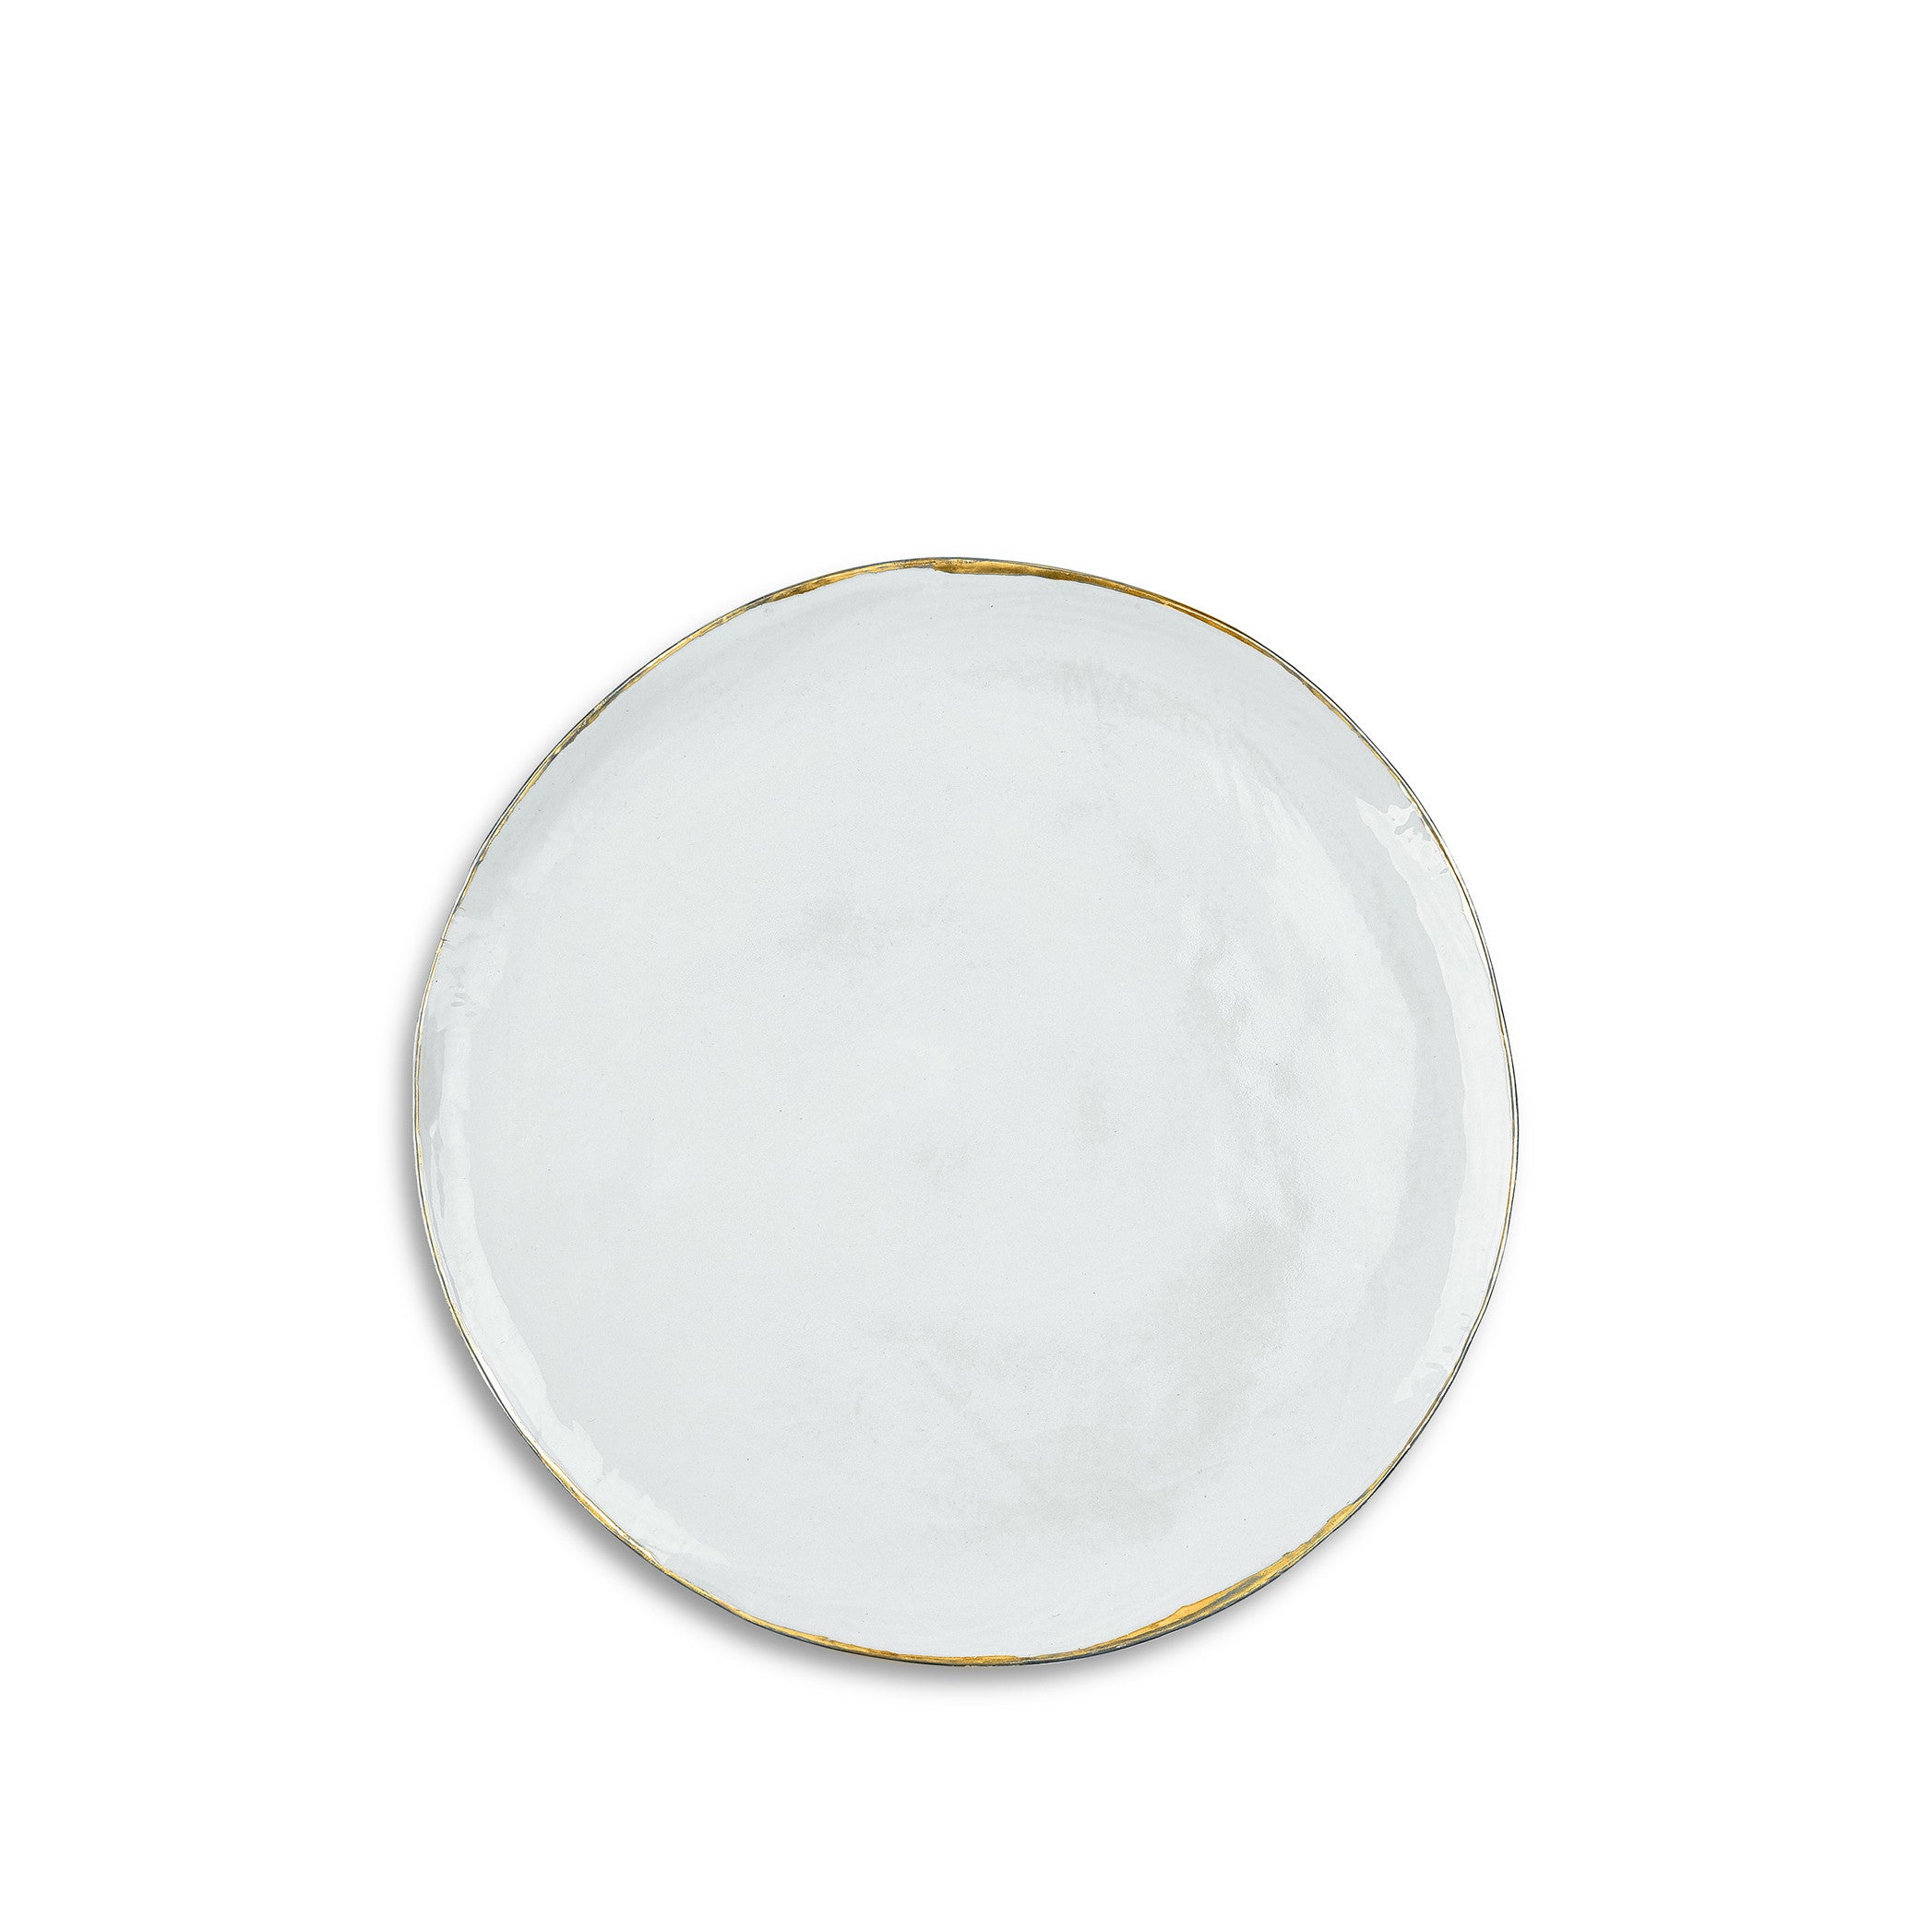 Medium Light Blue Ceramic Plate with Gold Rim, 28cm